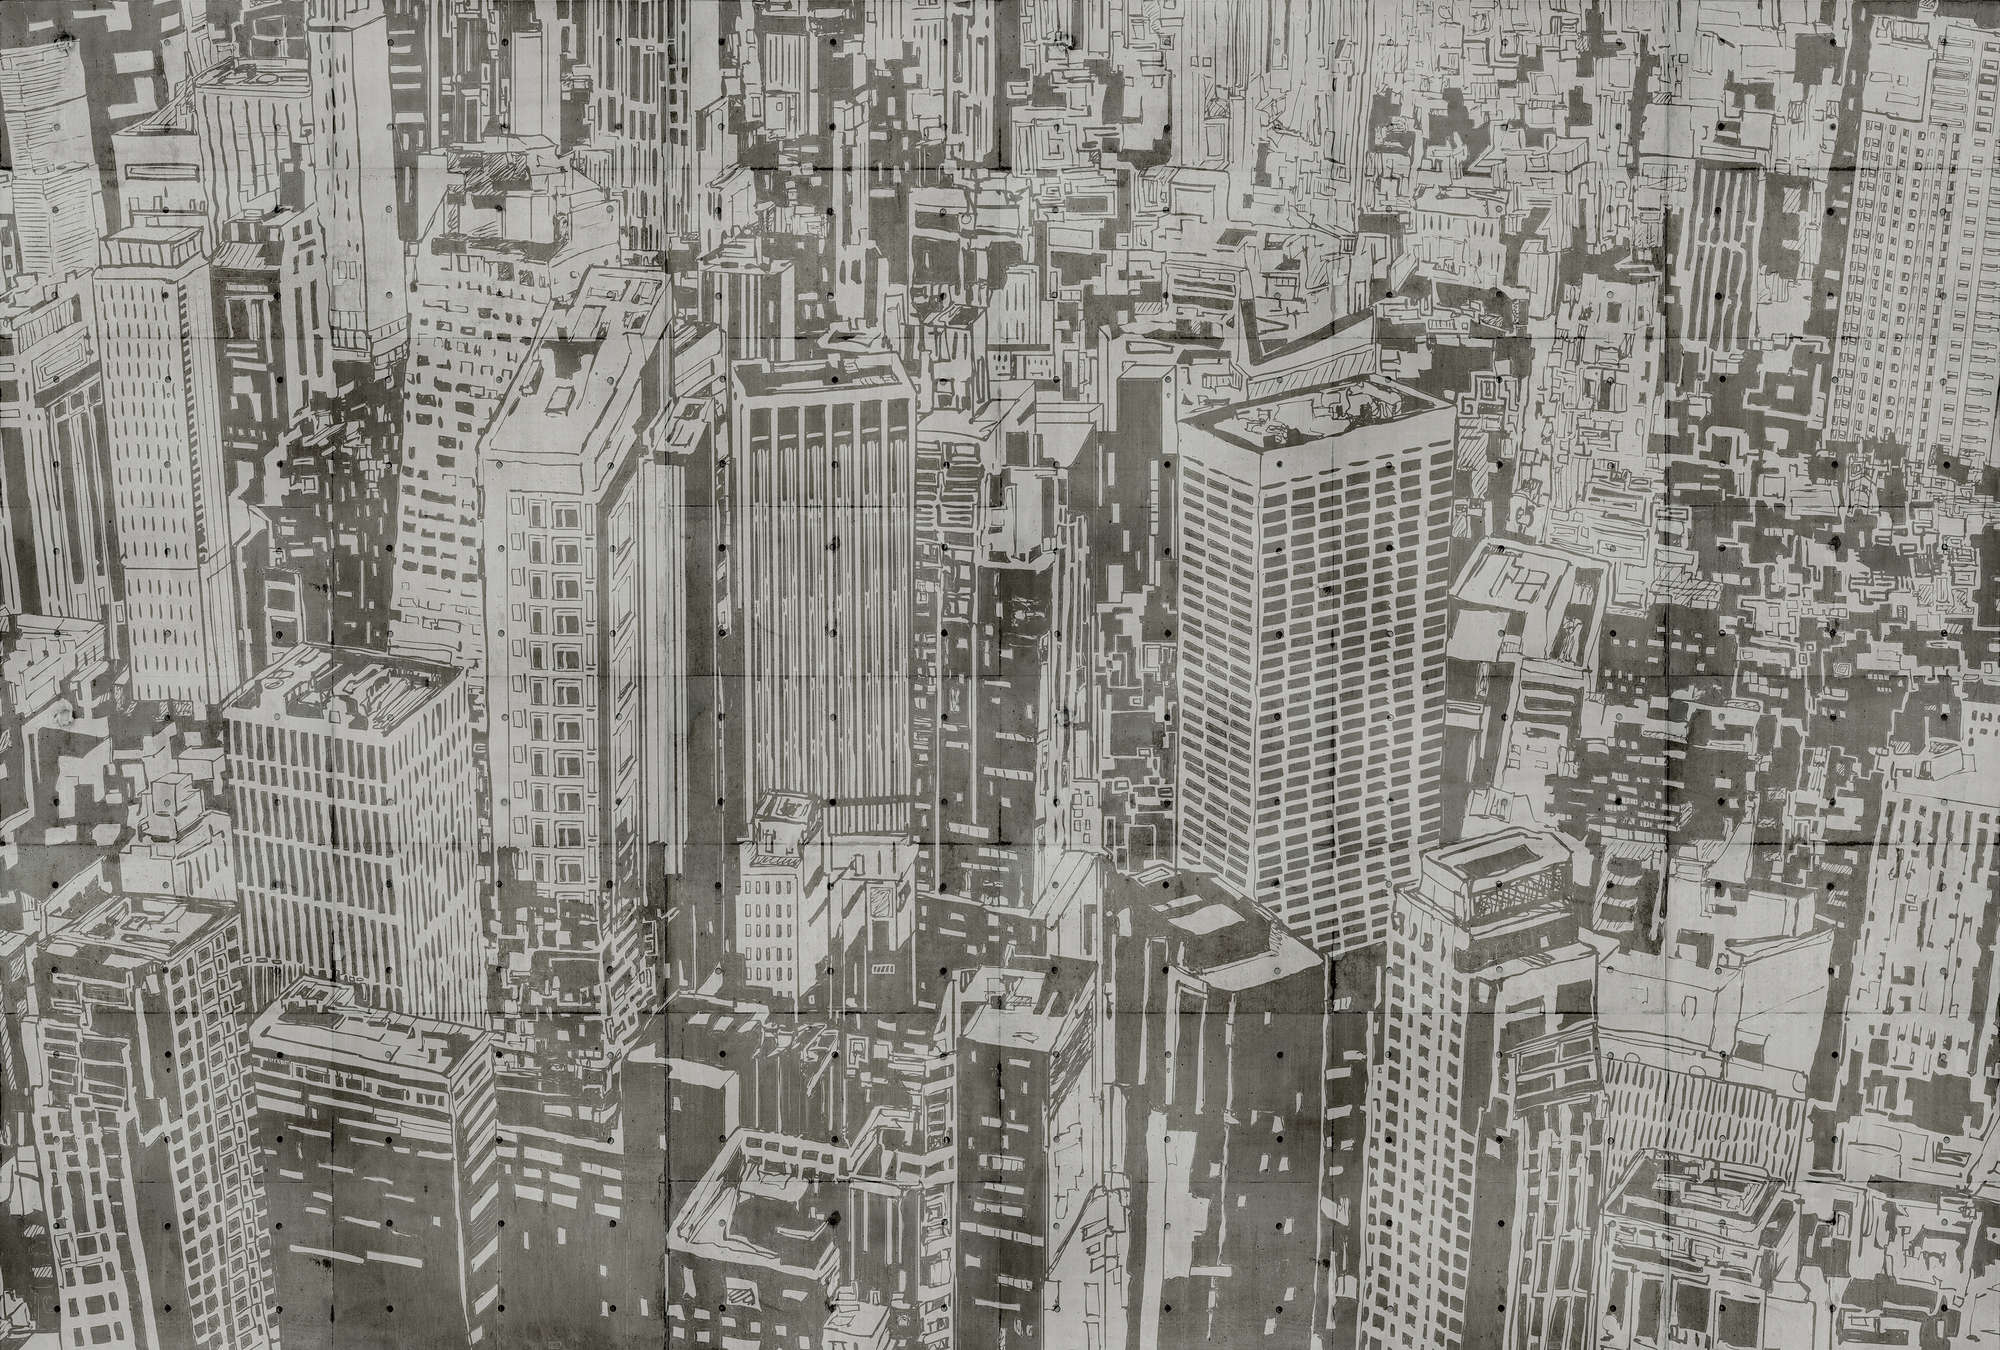             Downtown 2 - Papier peint panoramique structure béton look New York - beige, marron | Intissé lisse mat
        